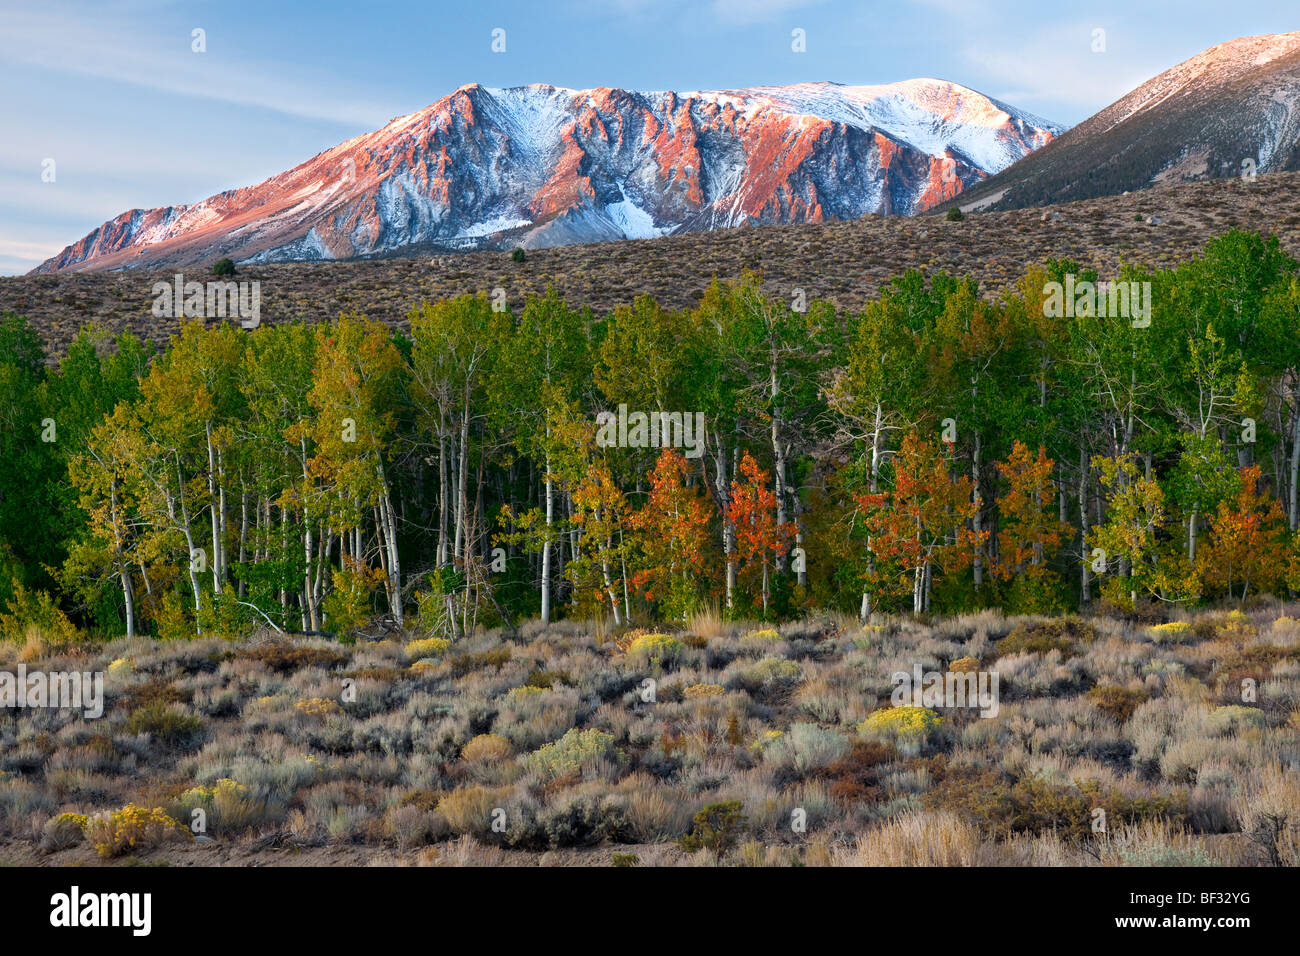 Couleurs d'automne apparaissent dans cette aspen grove, à la base de l'équipe de Sierra Nevada. Banque D'Images